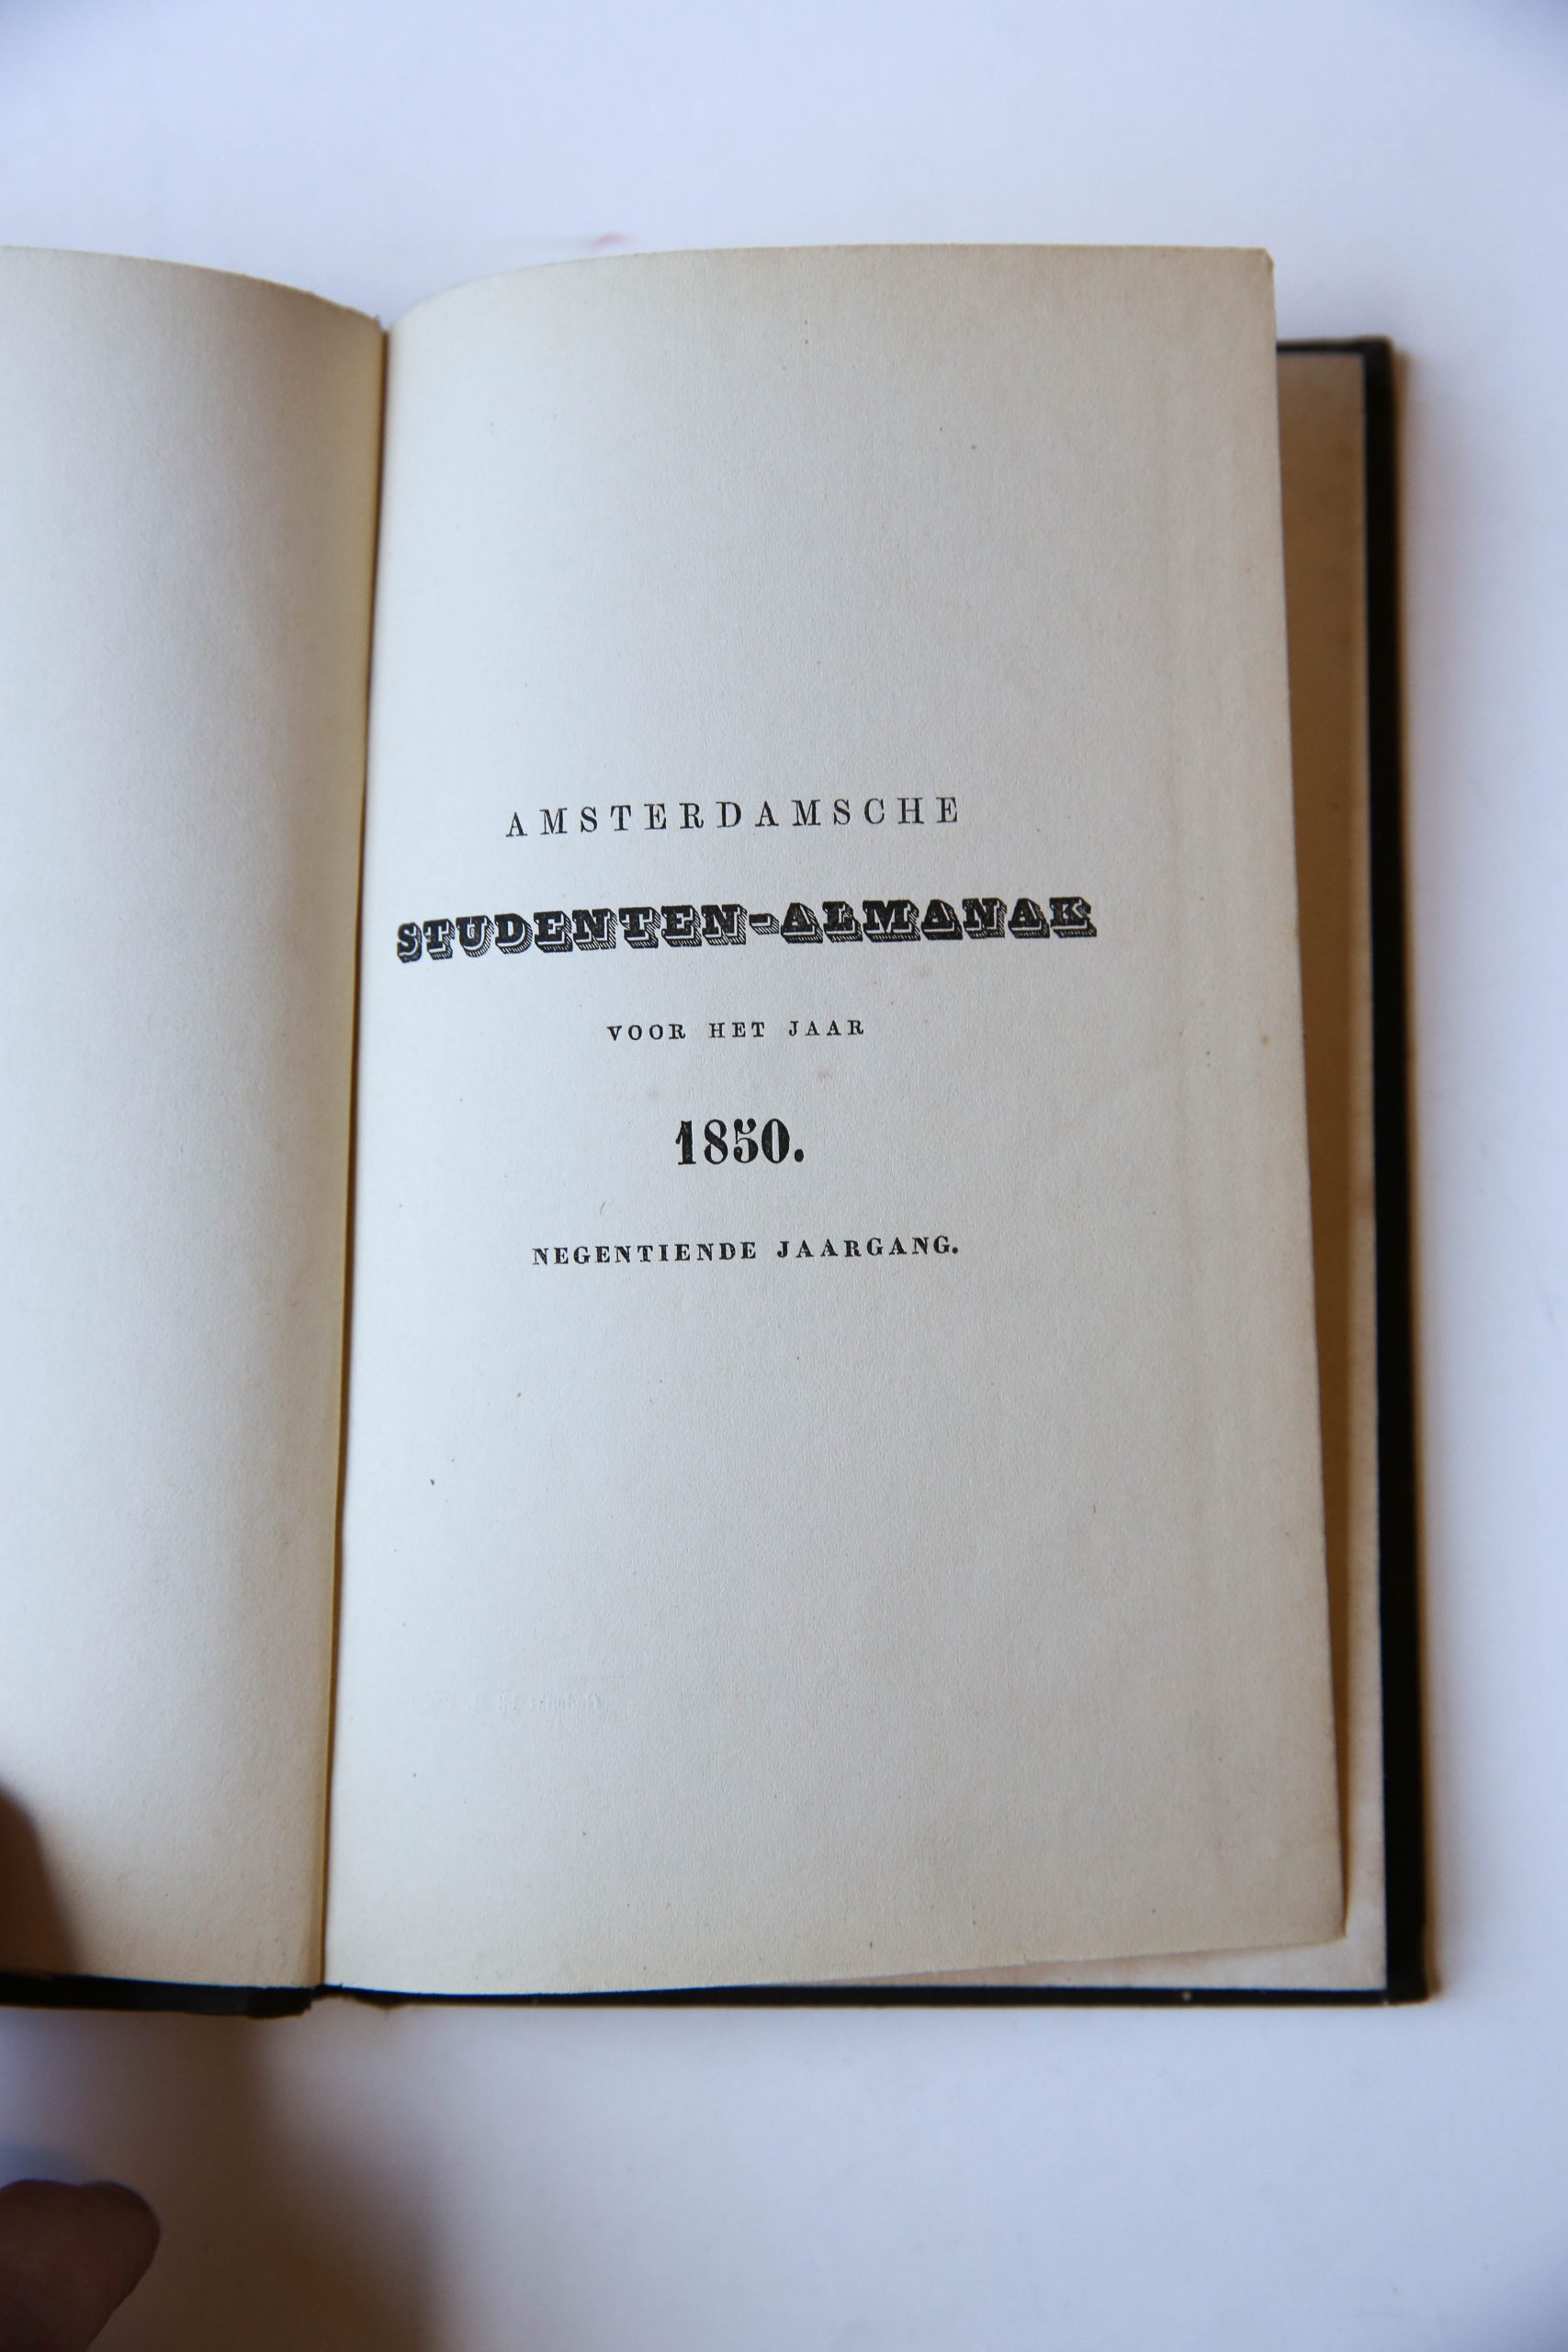 Amsterdamsche Studenten-Almanak voor het jaar 1850. Negentiende jaargang. Amsterdam, H. Bakels, 133 pp.